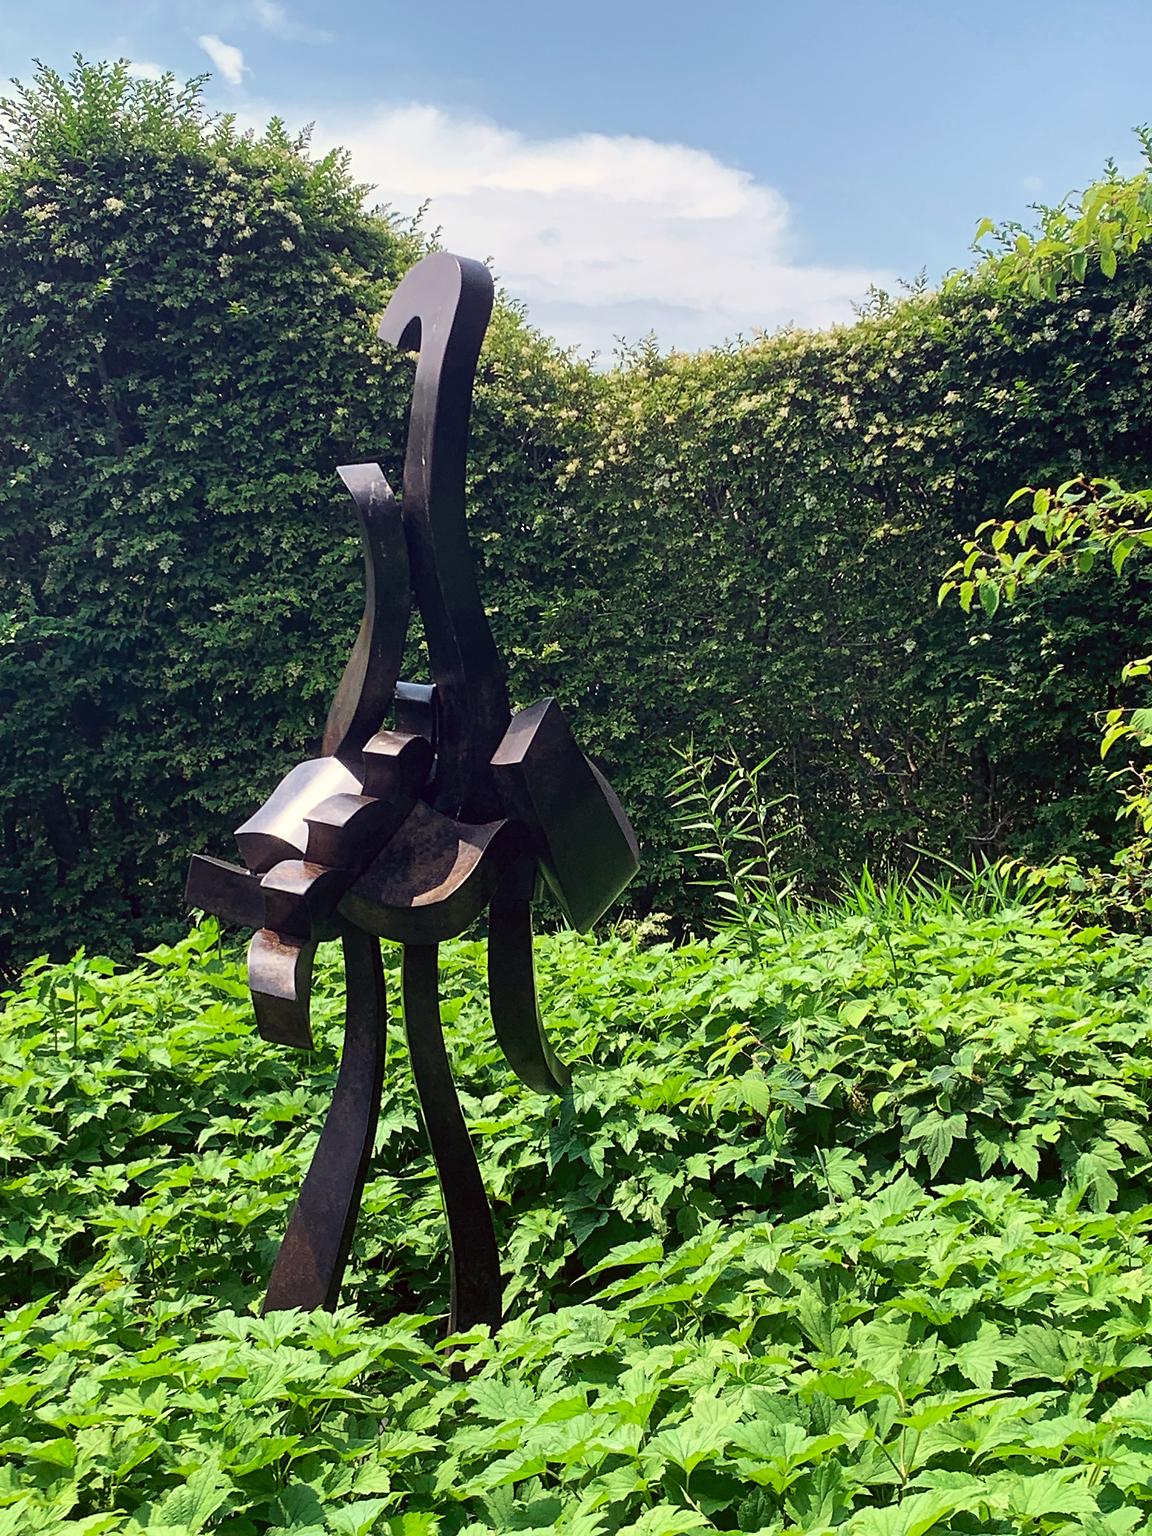 Hans Van de Bovenkamp Abstract Sculpture - "She-Clamdigger" Abstract, Bronze Metal Sculpture, Large-Scale, Outdoors